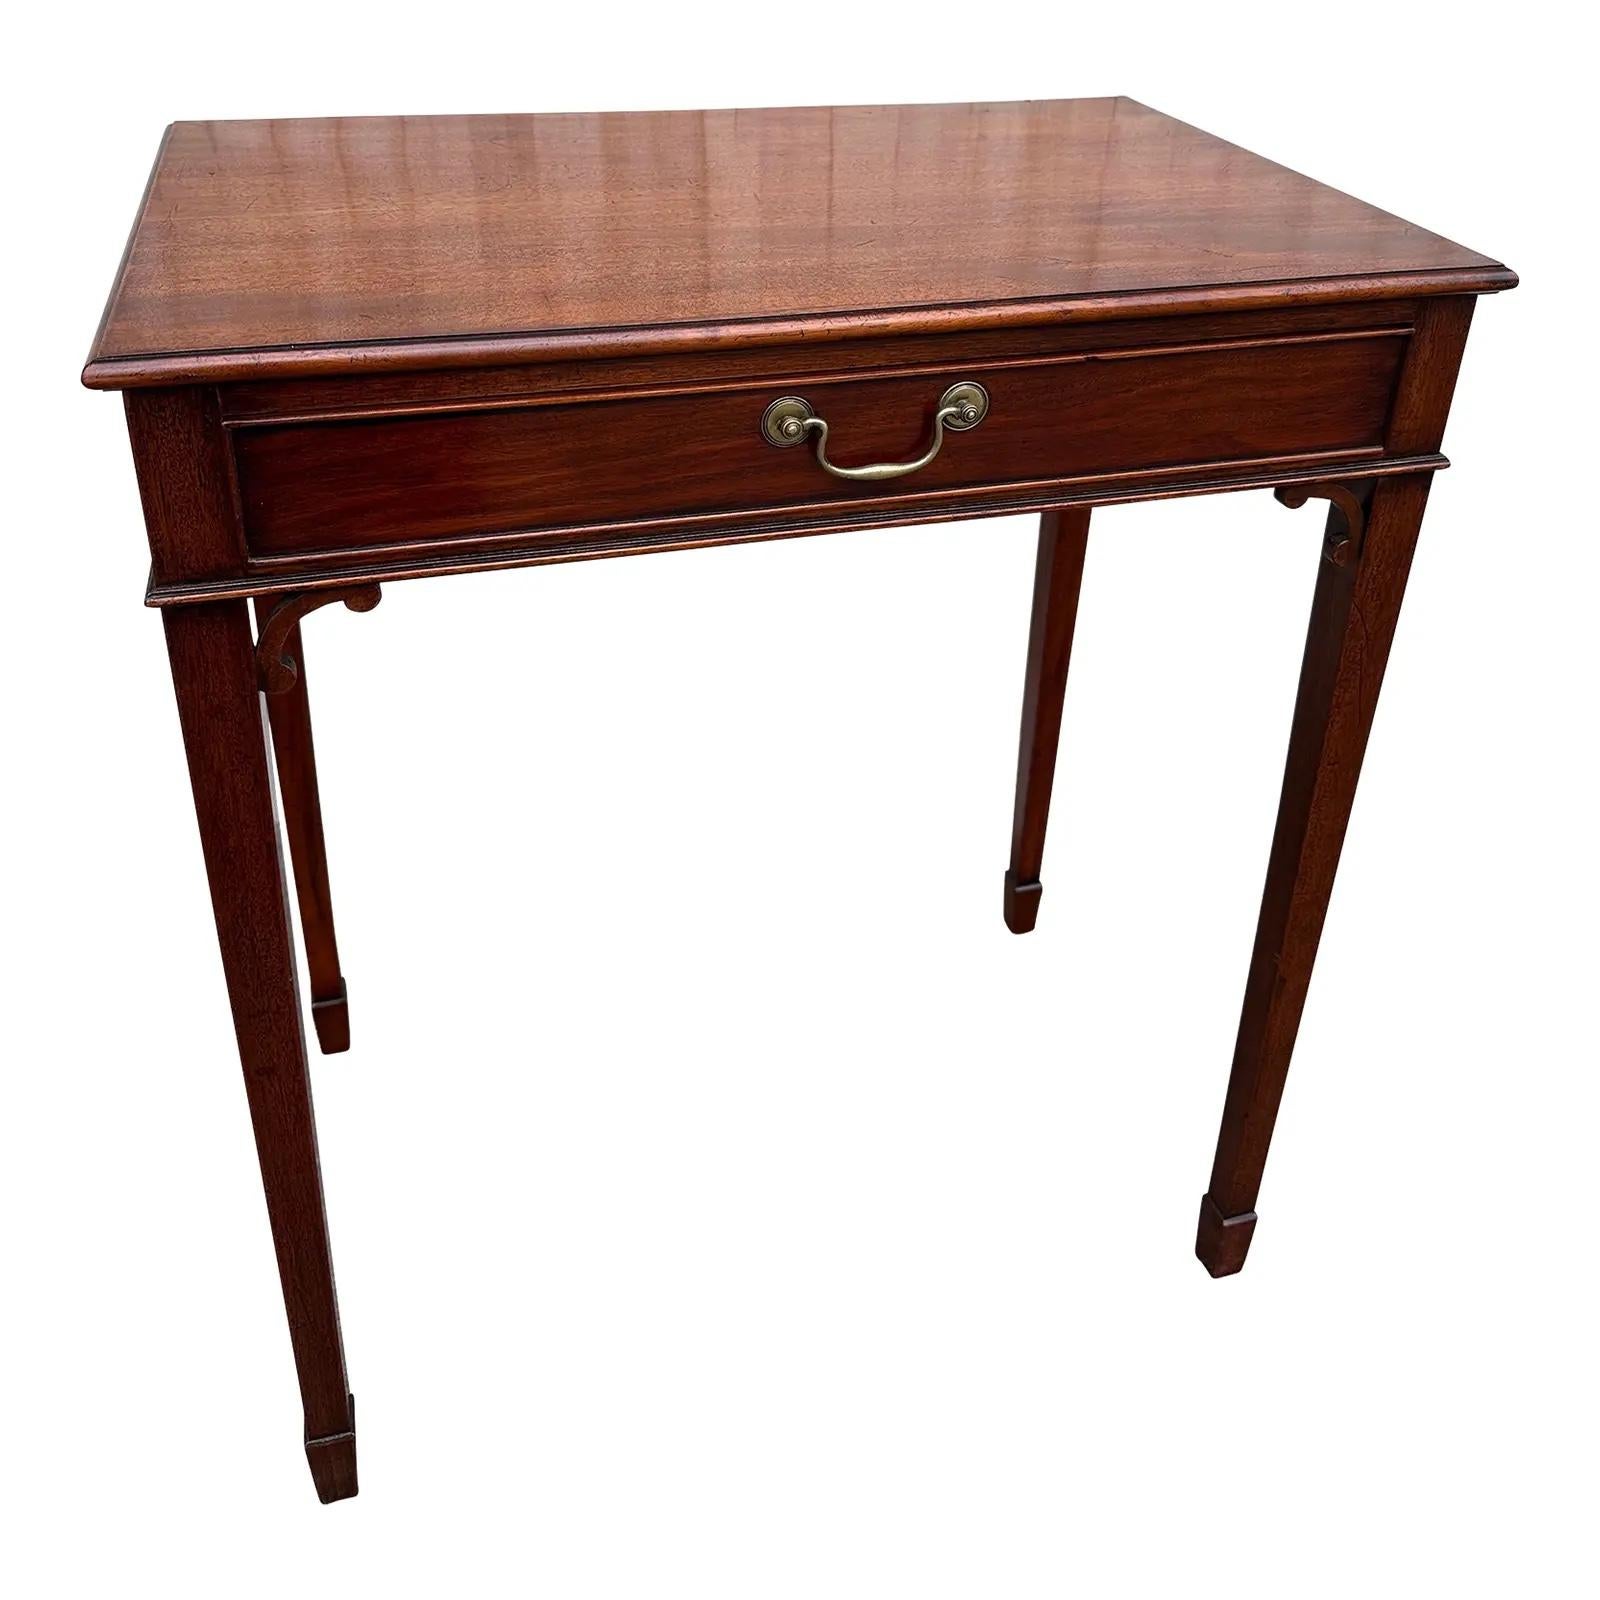 Voici une magnifique petite table d'appoint à un seul tiroir datant du début du 20e siècle. Cette table d'appoint très traditionnelle en acajou est en excellent état de conservation grâce à l'âge et à la patine.#863
